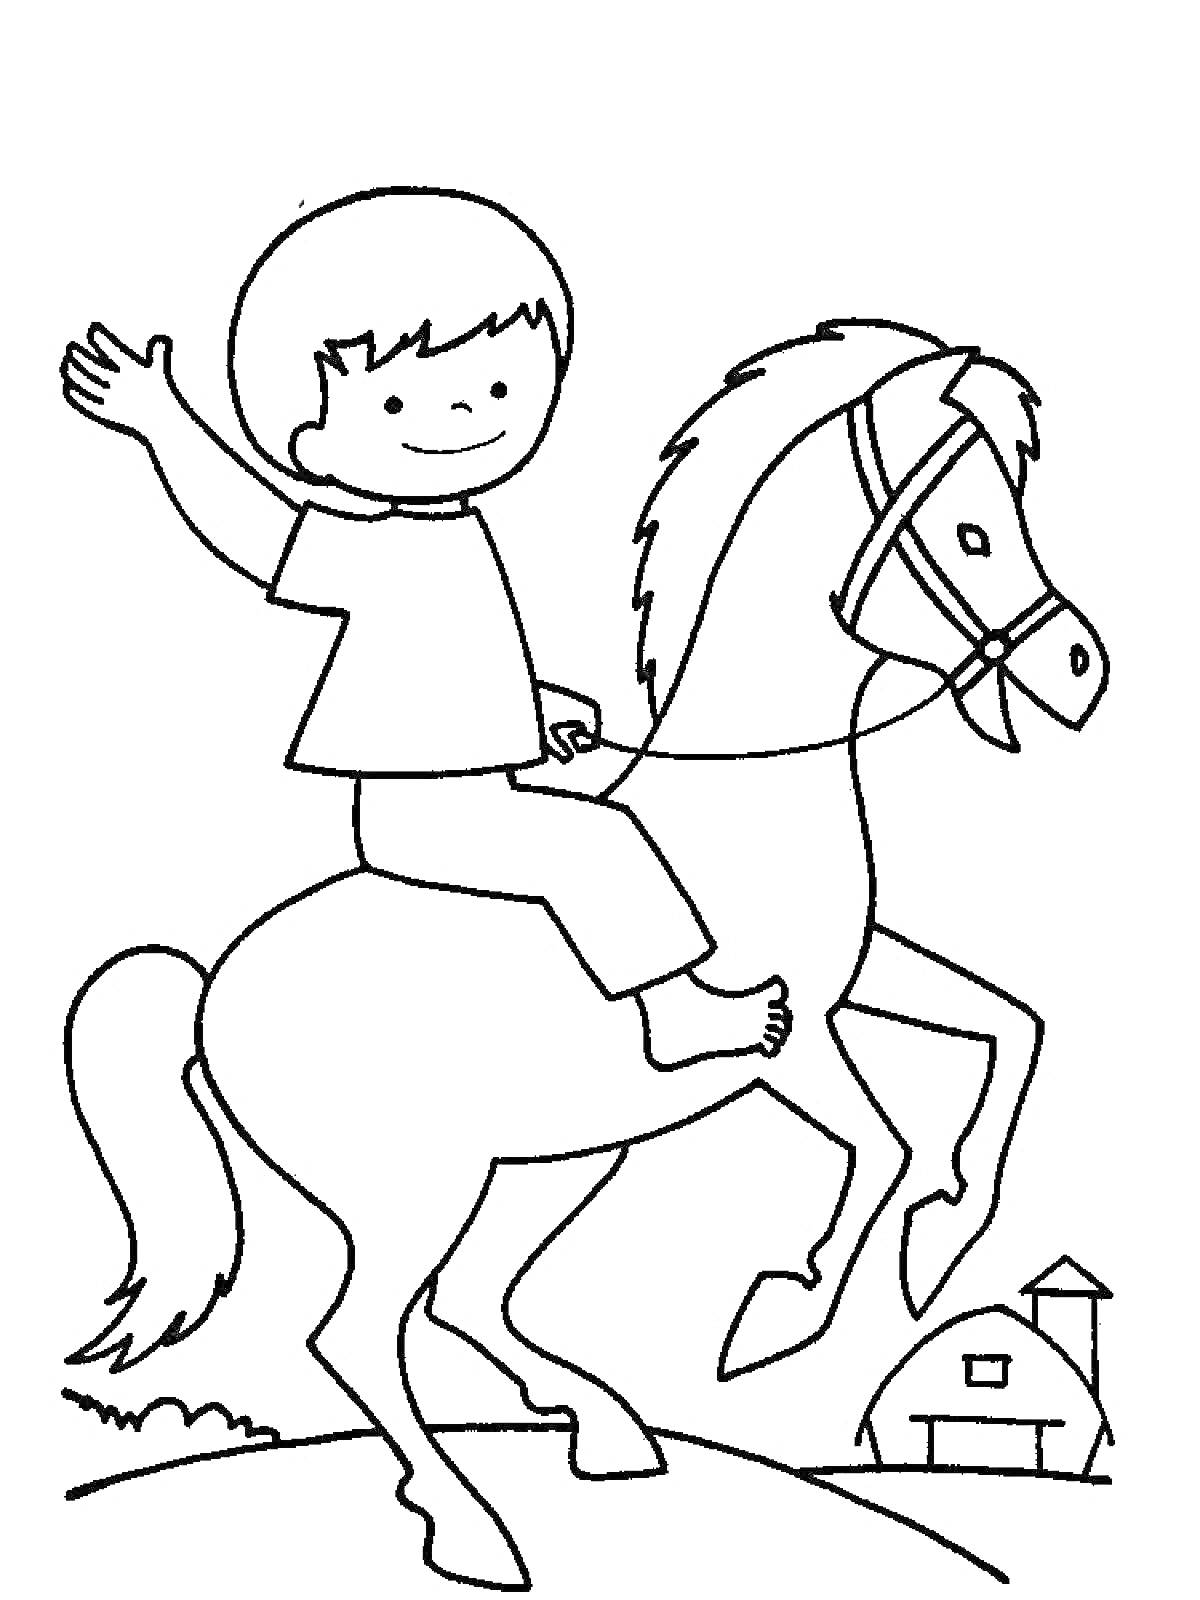 Раскраска счастливый всадник на лошади с амбаром на заднем плане